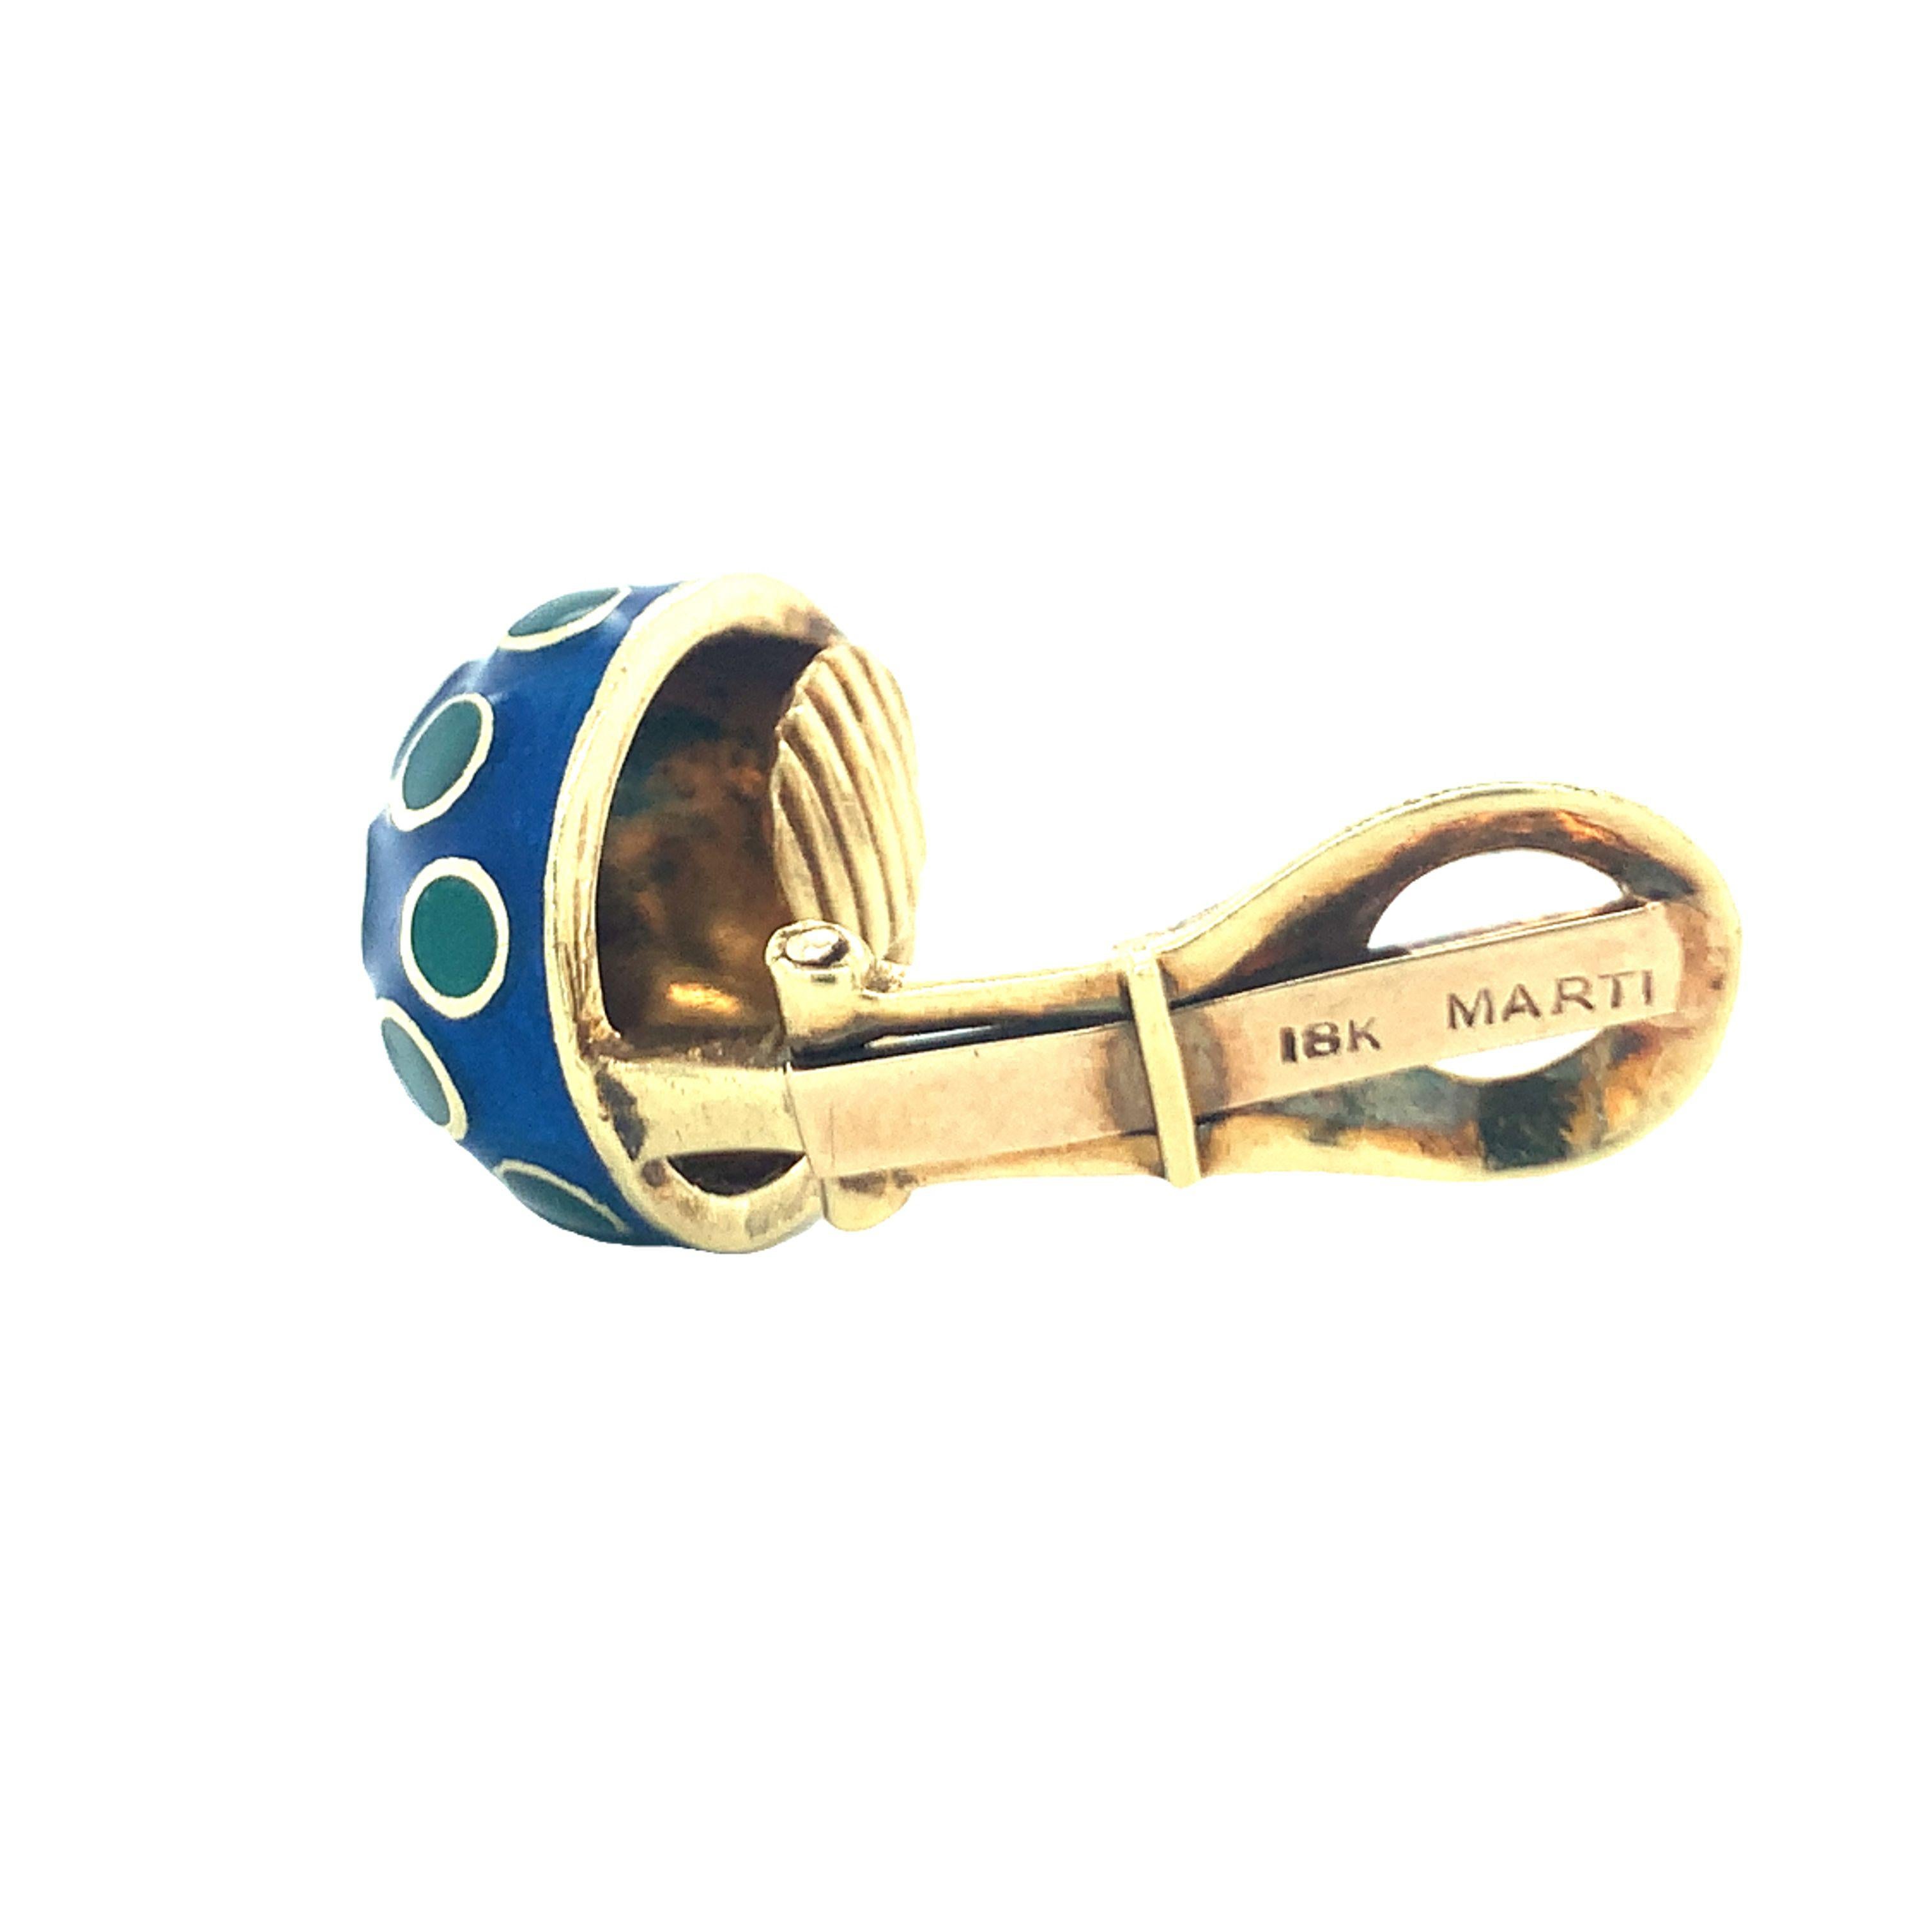 Ein Paar blaue und grüne gepunktete Knopfohrringe aus 18 Karat Gelbgold von Marti (gestempelt) mit einem Durchmesser von 16 Millimetern. Ca. 1970er Jahre.

Schick, liebenswert, süß.

Metall: 18K Gelbgold
Edelstein: Blaue und grüne Emaille
Circa: